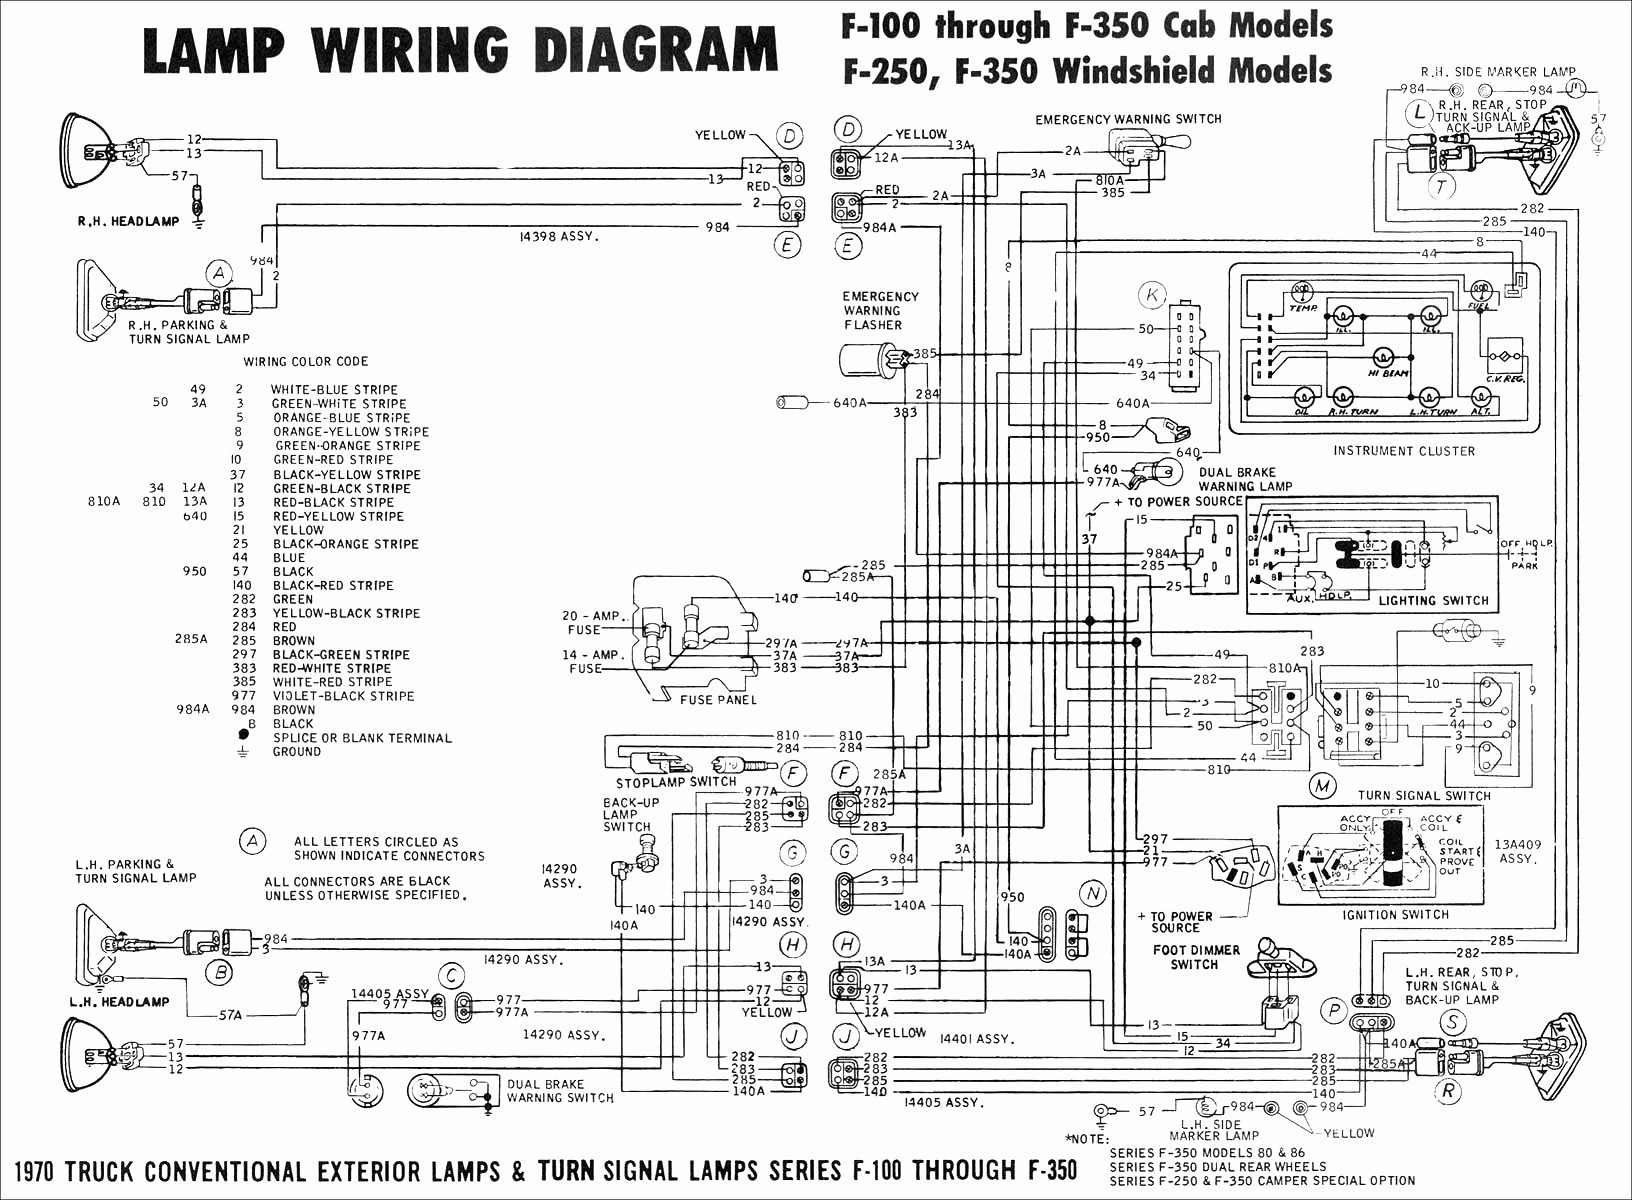 2002 Chevy Trailblazer Engine Diagram Cessna Engine Diagram Wiring Diagram Datasource Of 2002 Chevy Trailblazer Engine Diagram